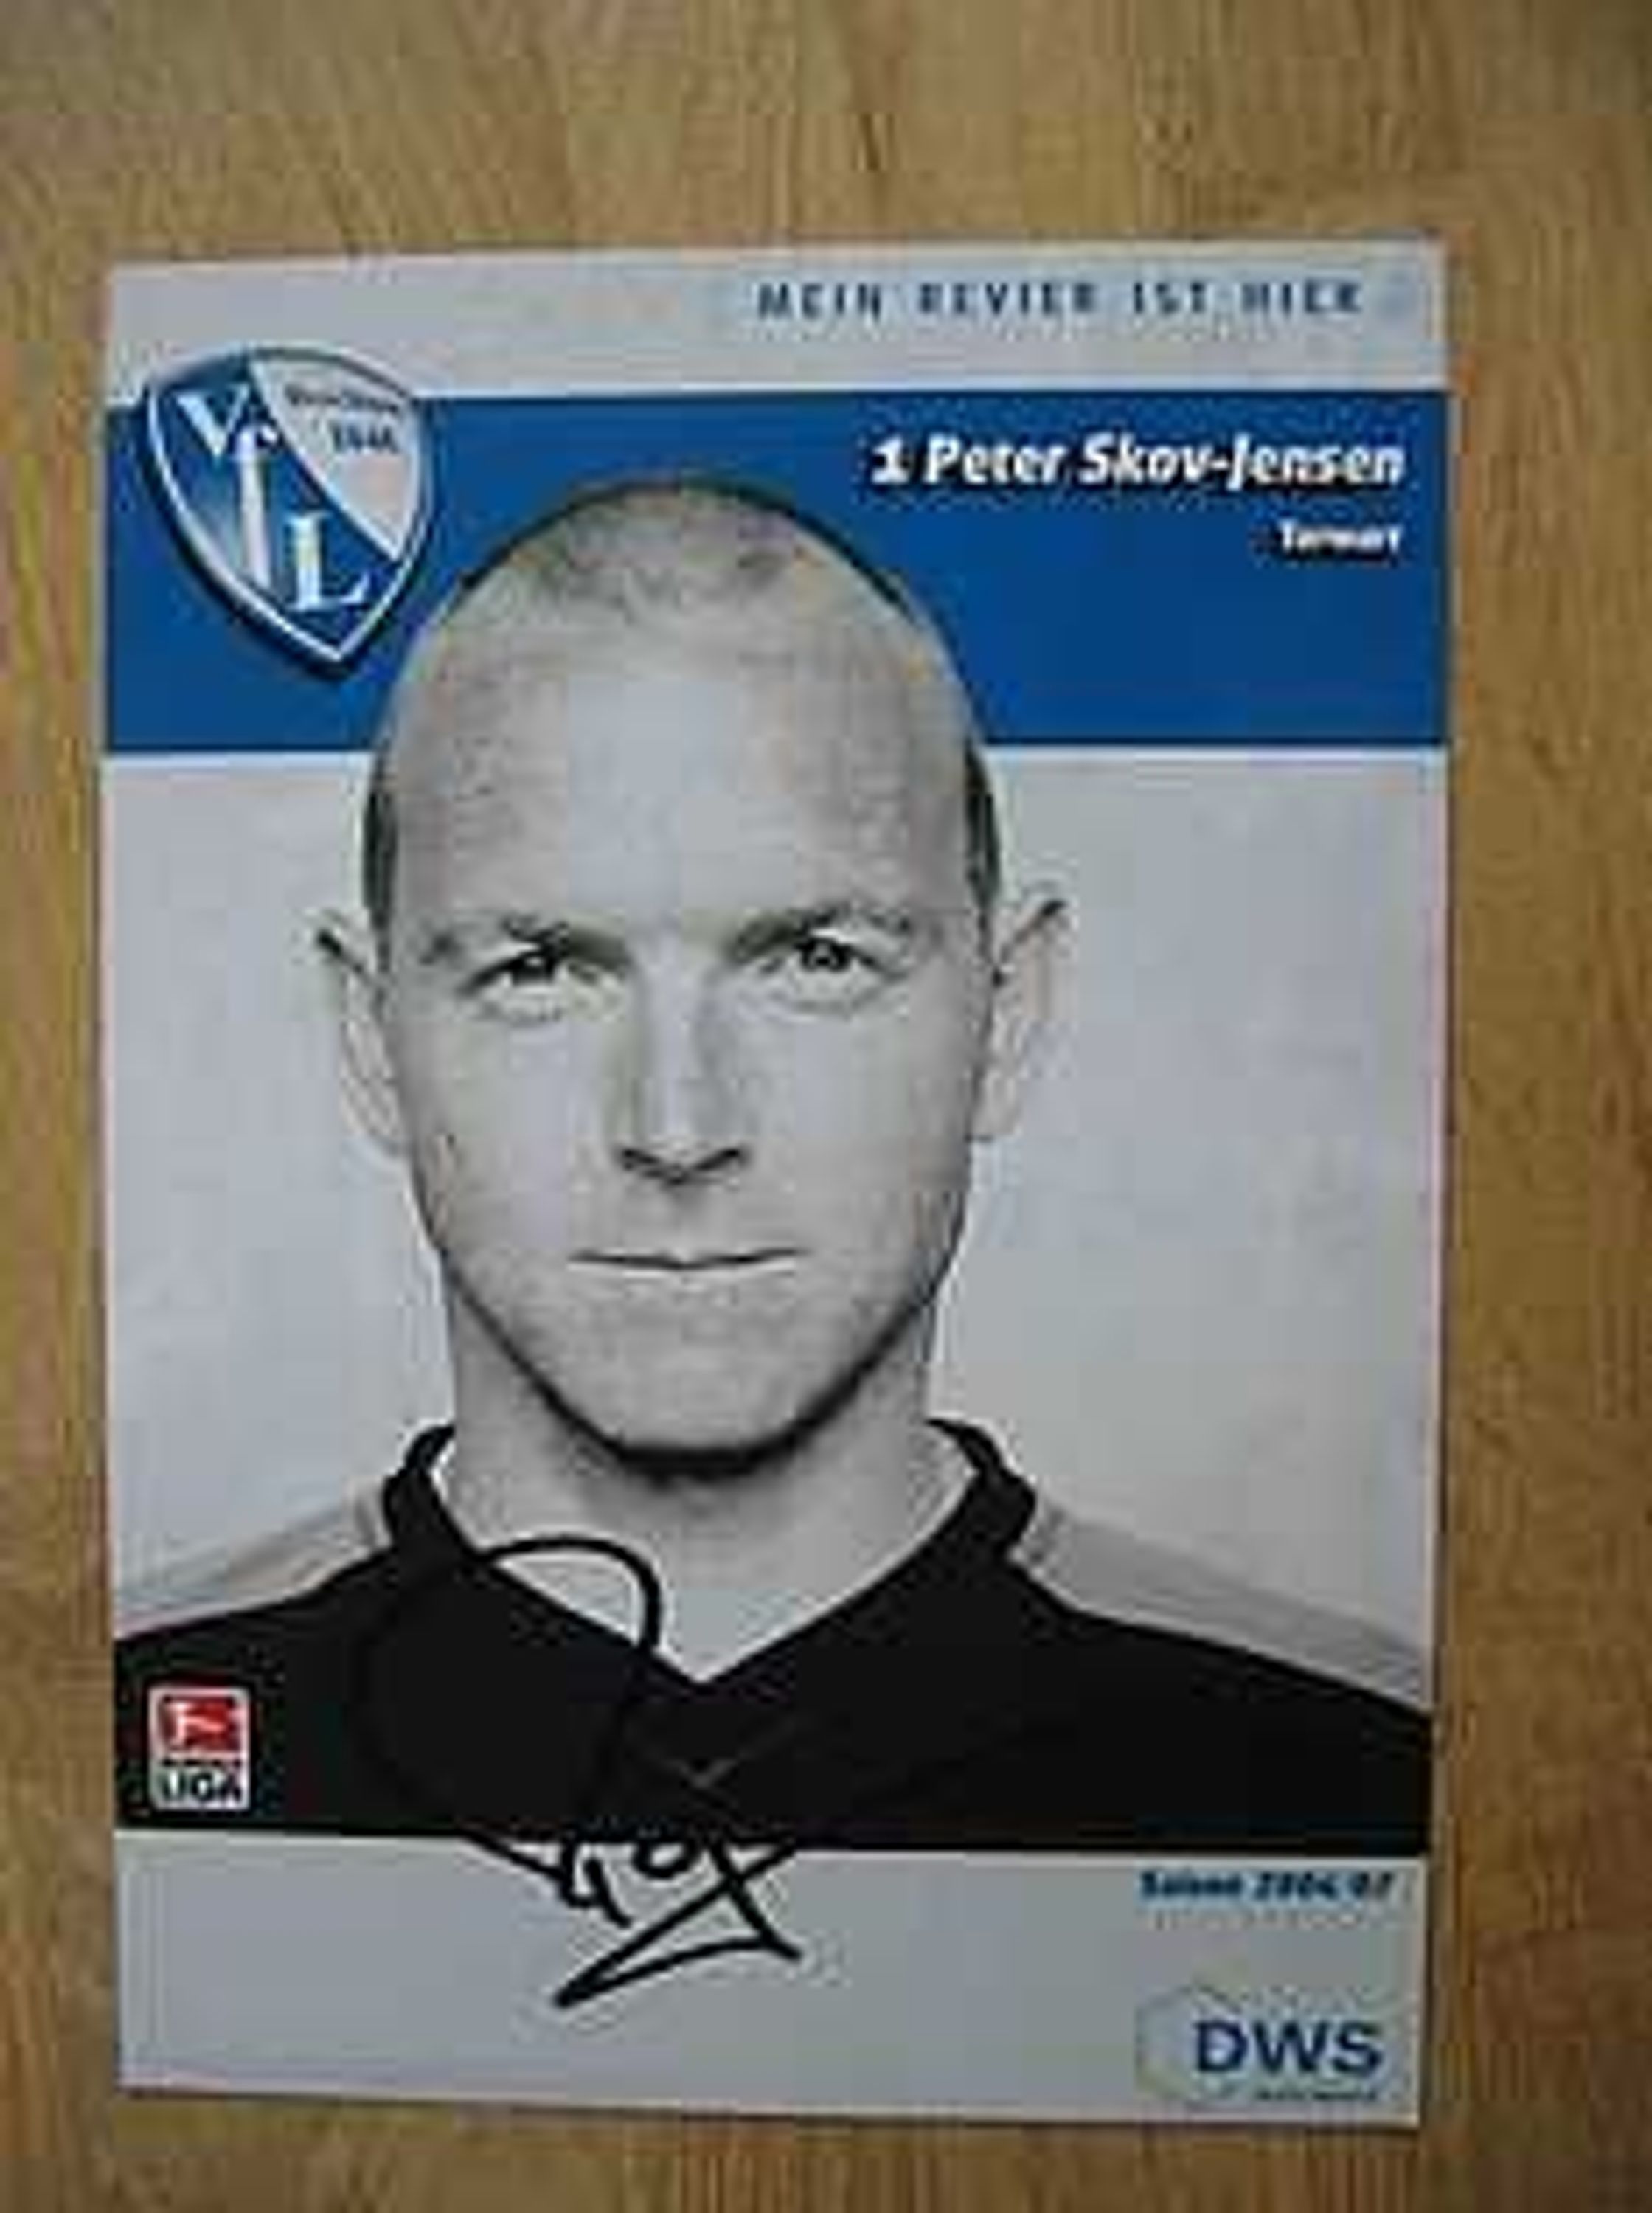 VfL Bochum Saison 06/07 Peter Skov-Jensen Autogramm gebraucht kaufen bei ...